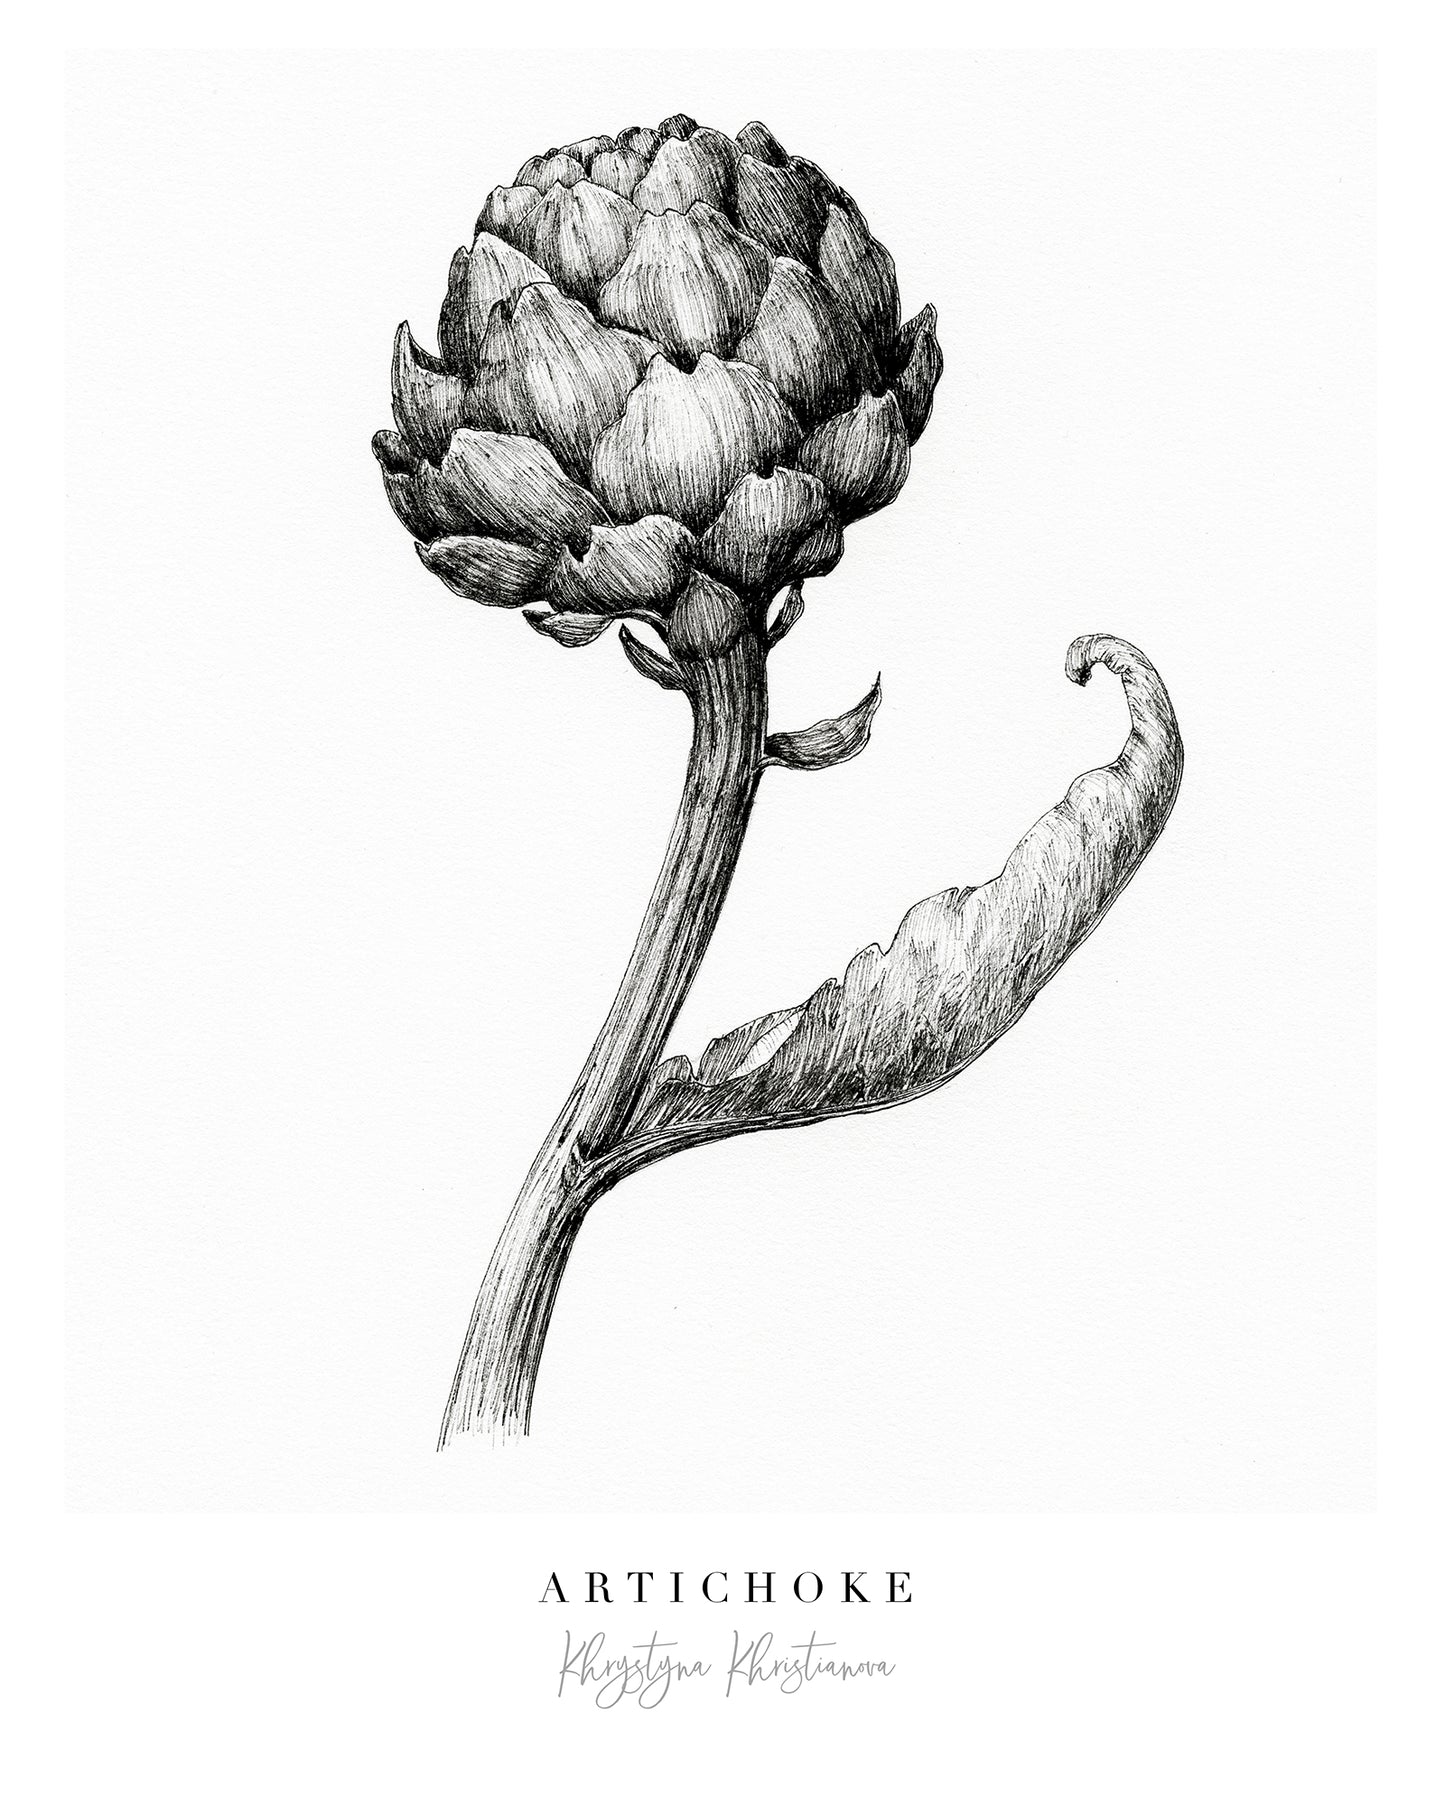 'Artichoke' giclee print. Unframed